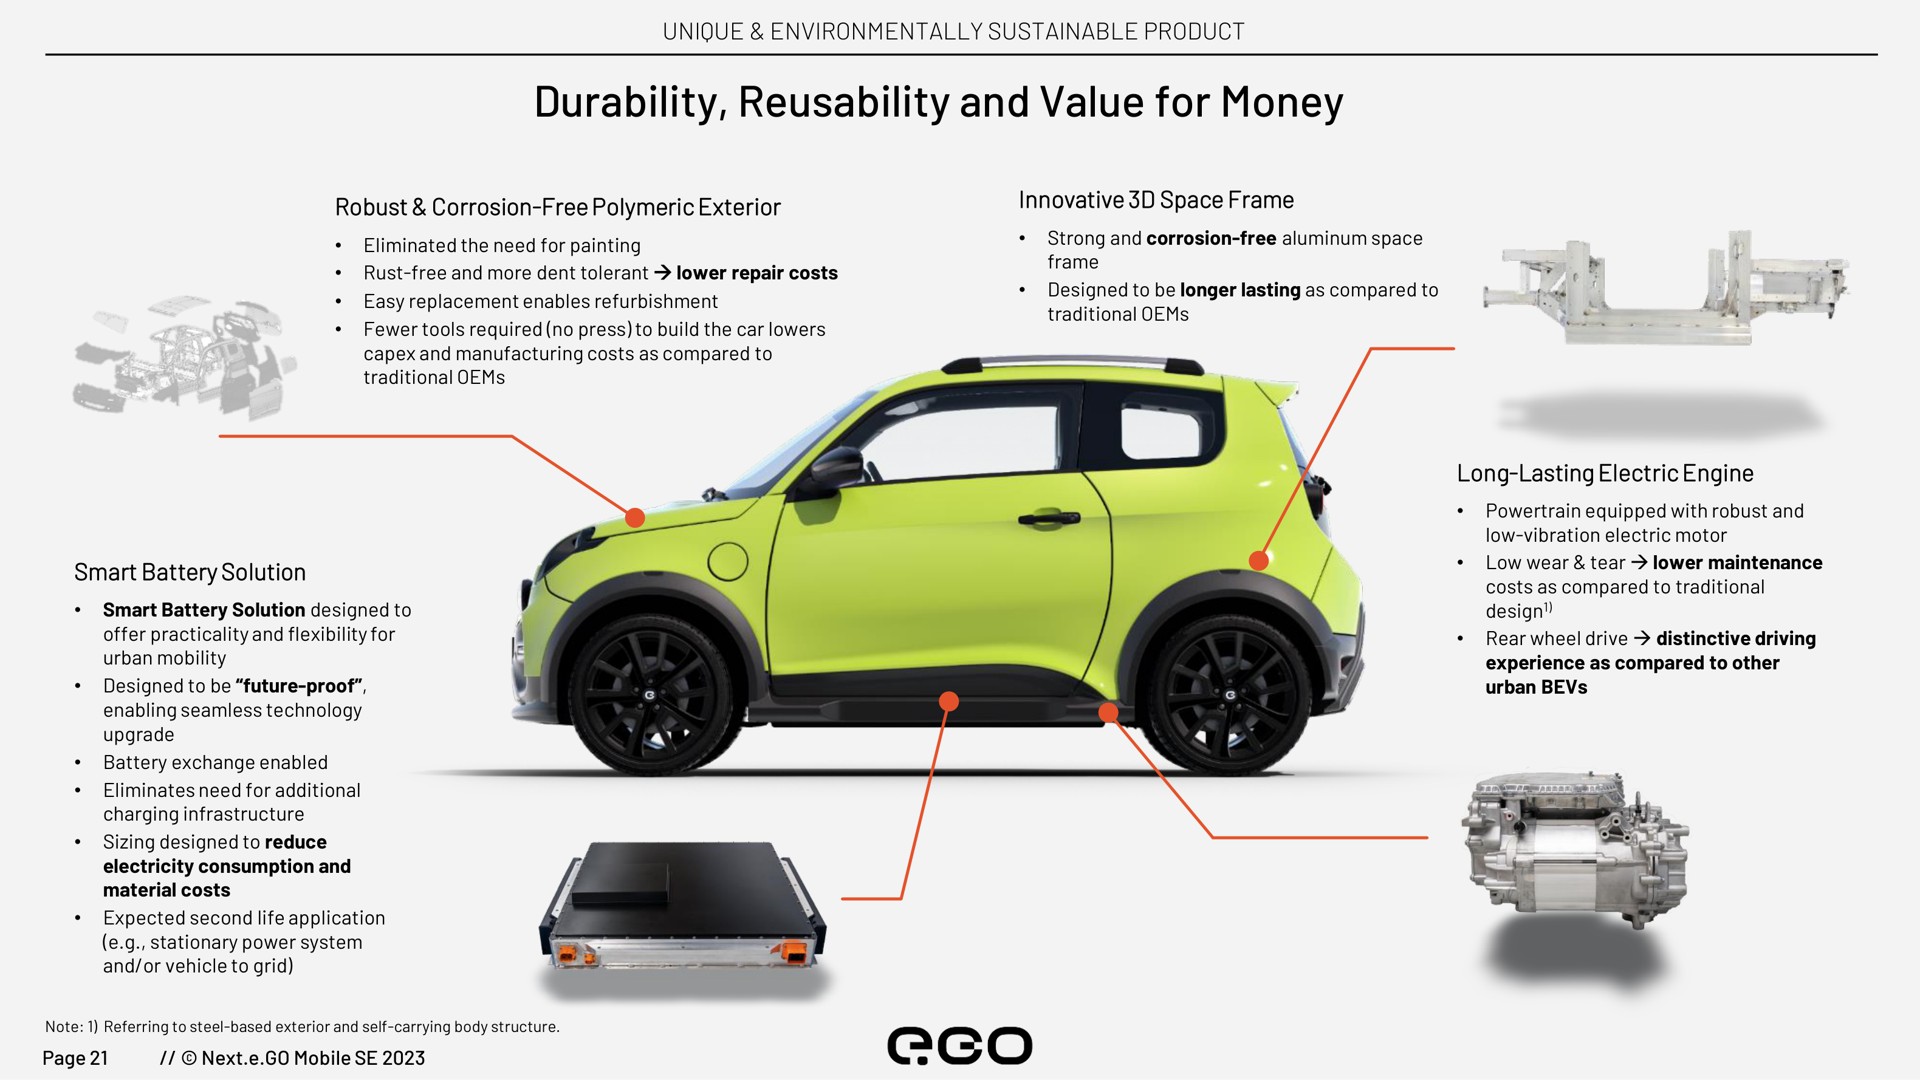 durability and value for money | Next.e.GO